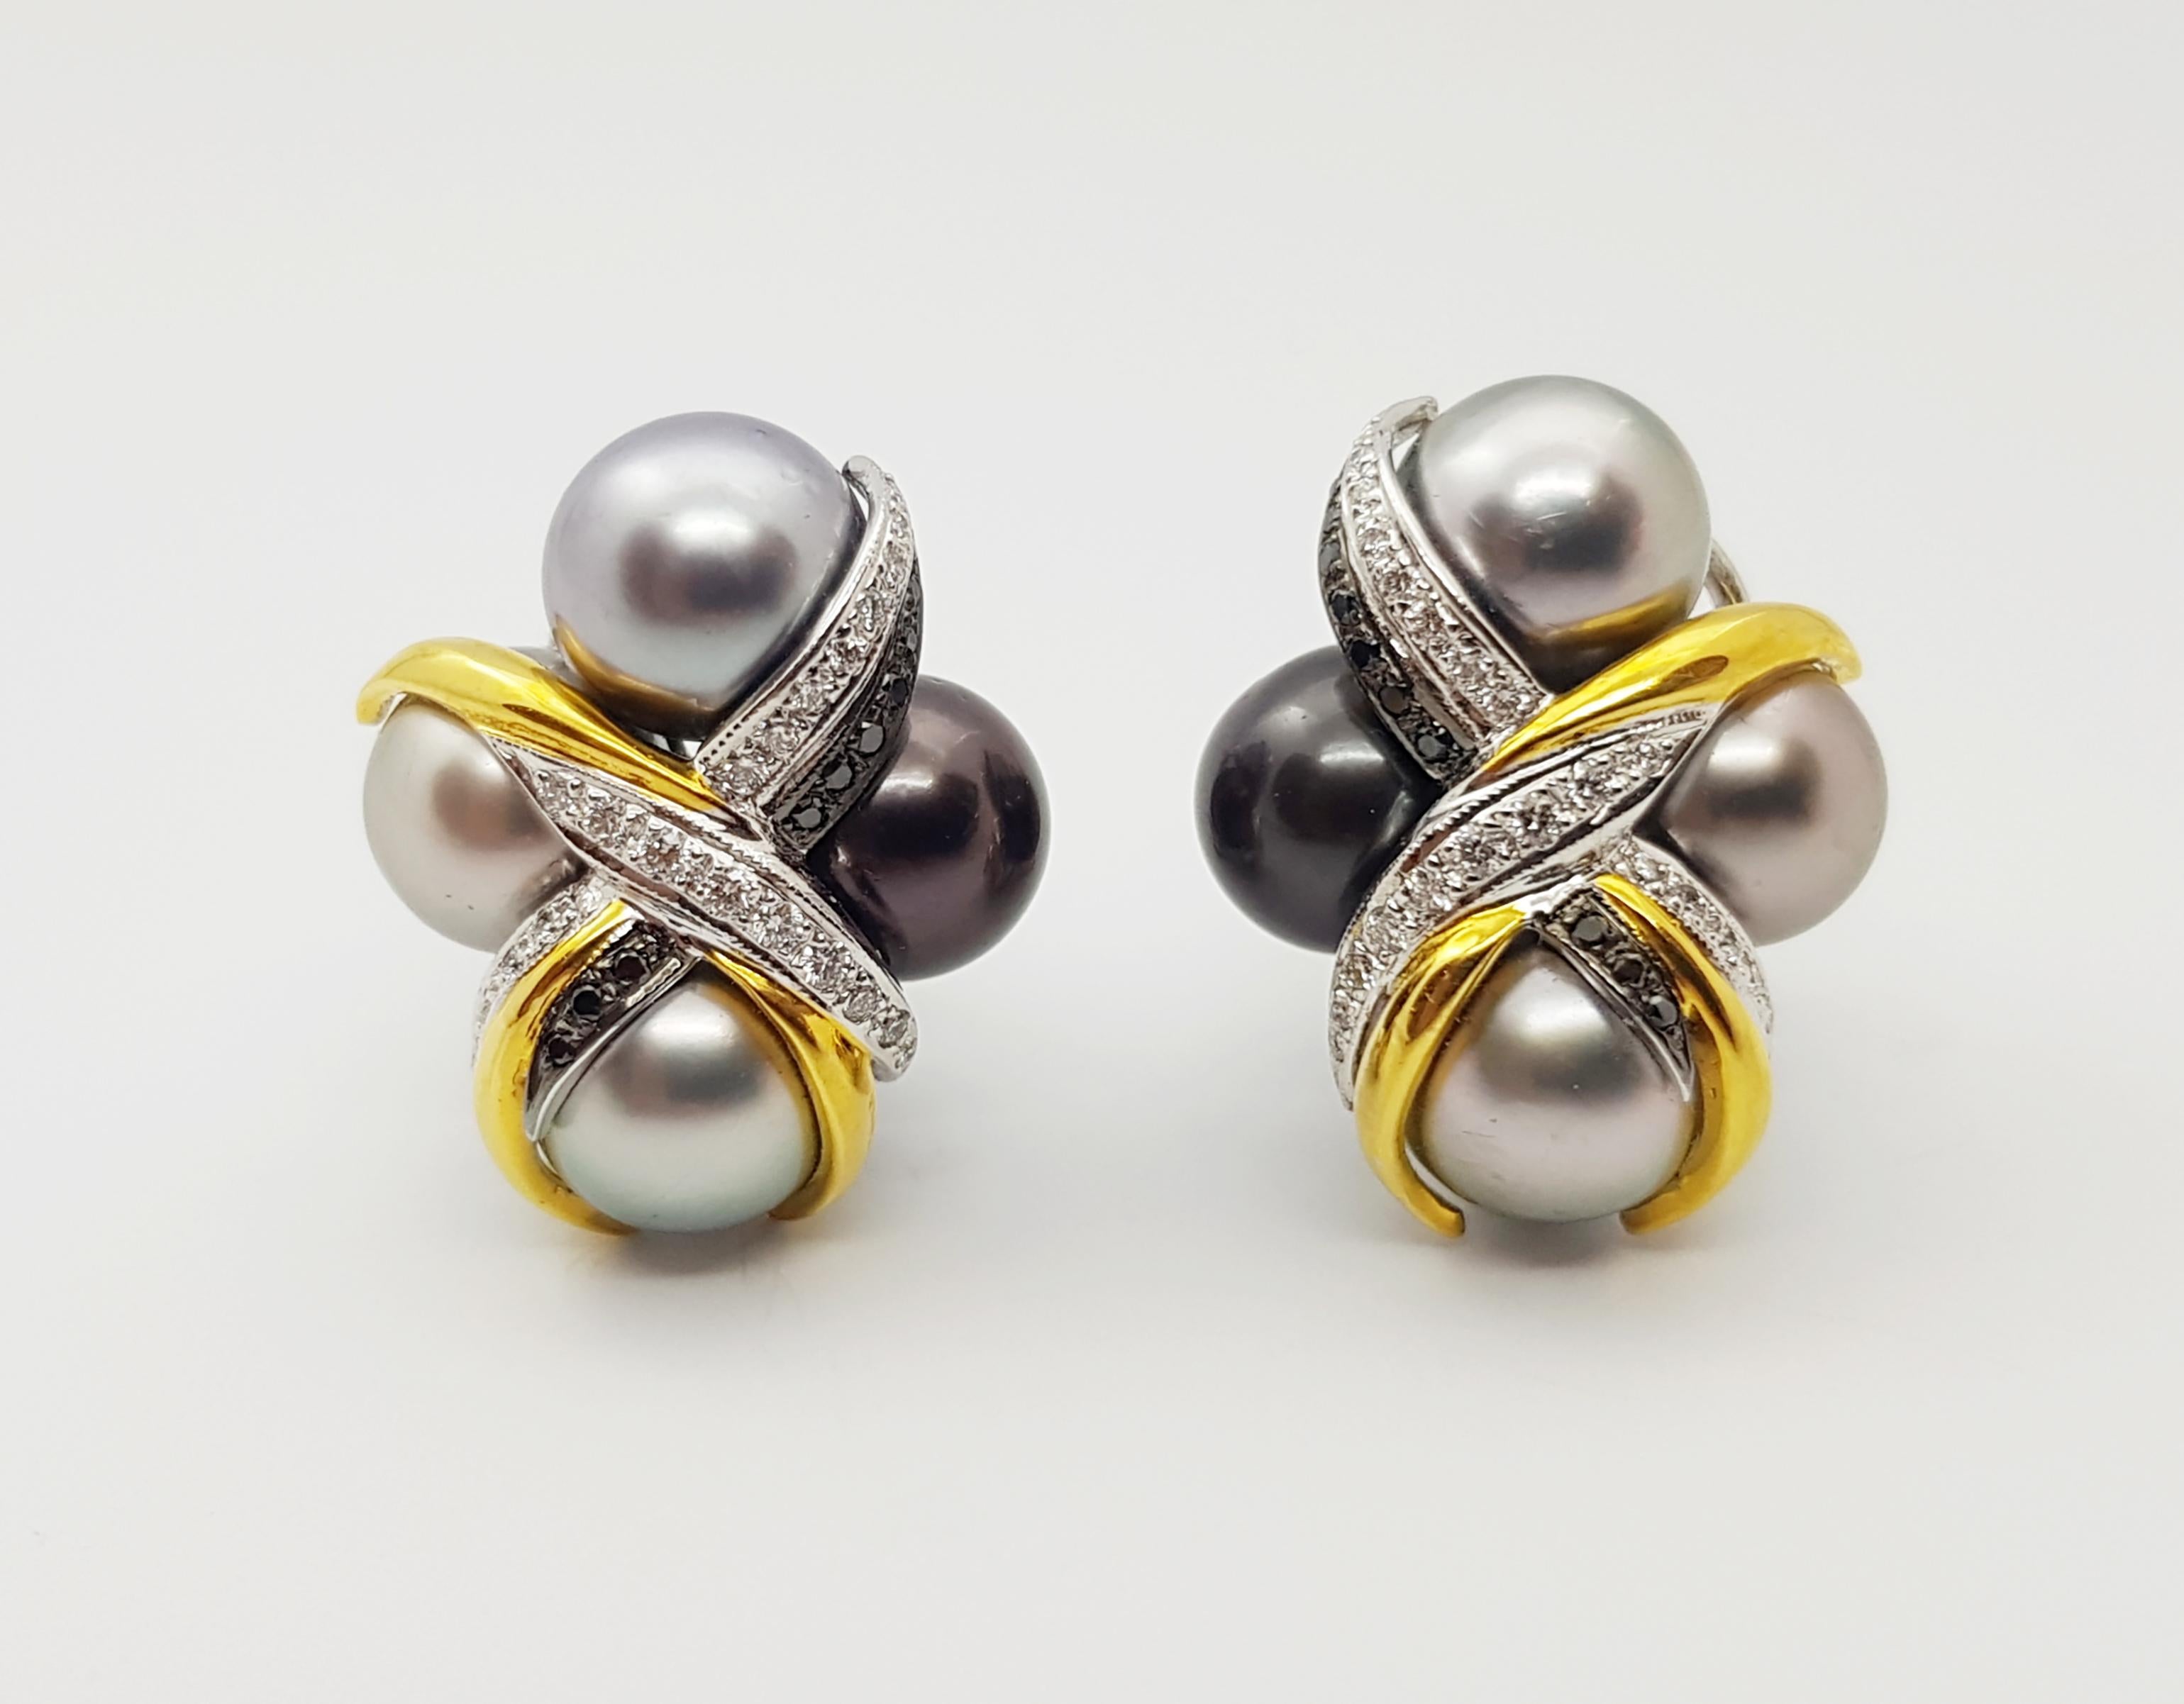 Boucles d'oreilles en or blanc 18 carats avec perle des mers du Sud, diamant 0,42 carat et diamant noir 0,15 carat

Largeur :  2.1 cm 
Longueur :  2.5 cm
Poids total : 24,51 grammes

